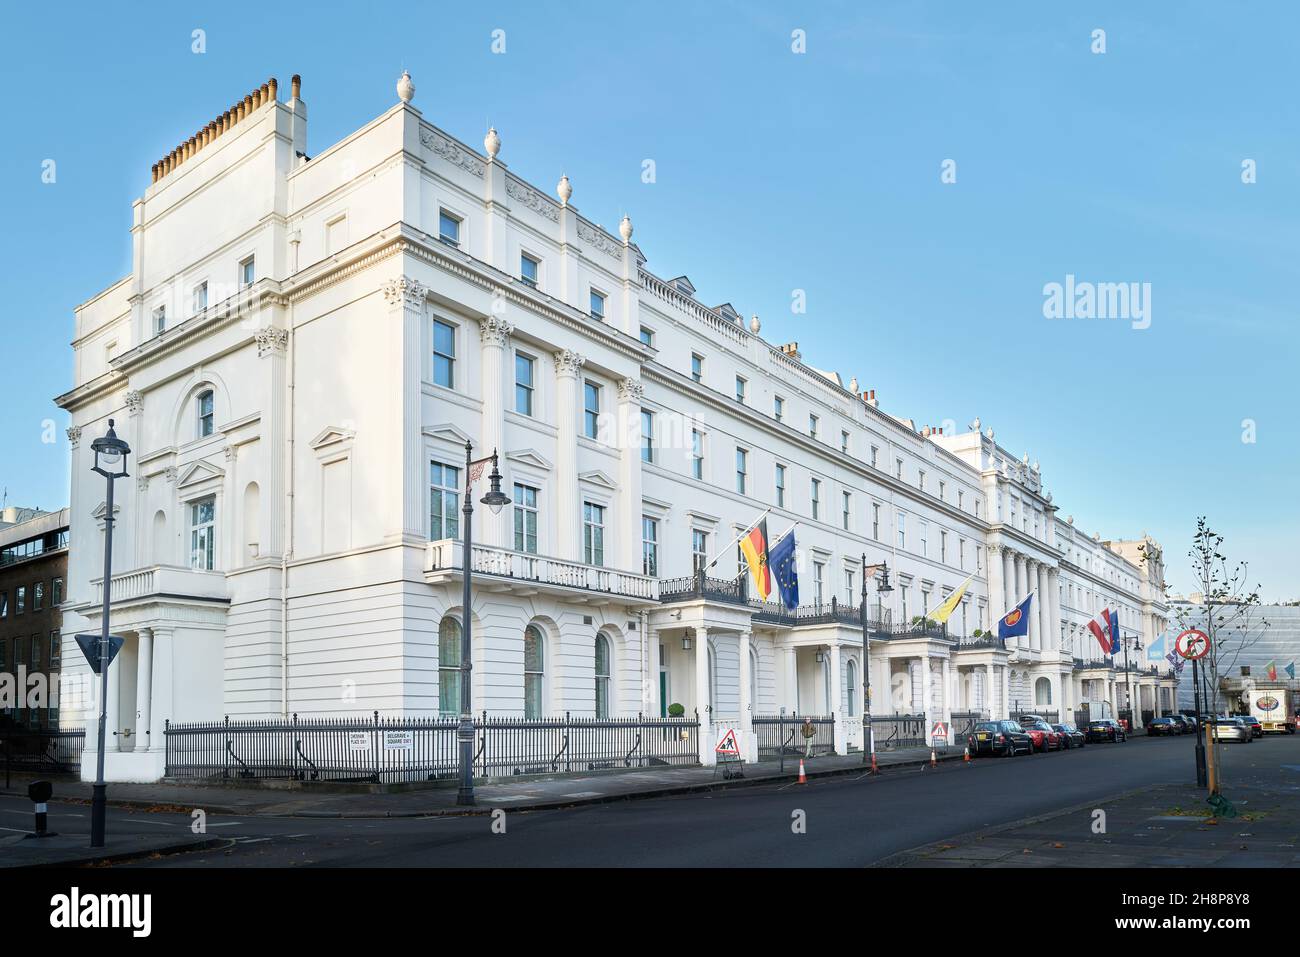 Das deutsche und andere Botschaftsgebäude am Belgrave Square, London, England. Stockfoto